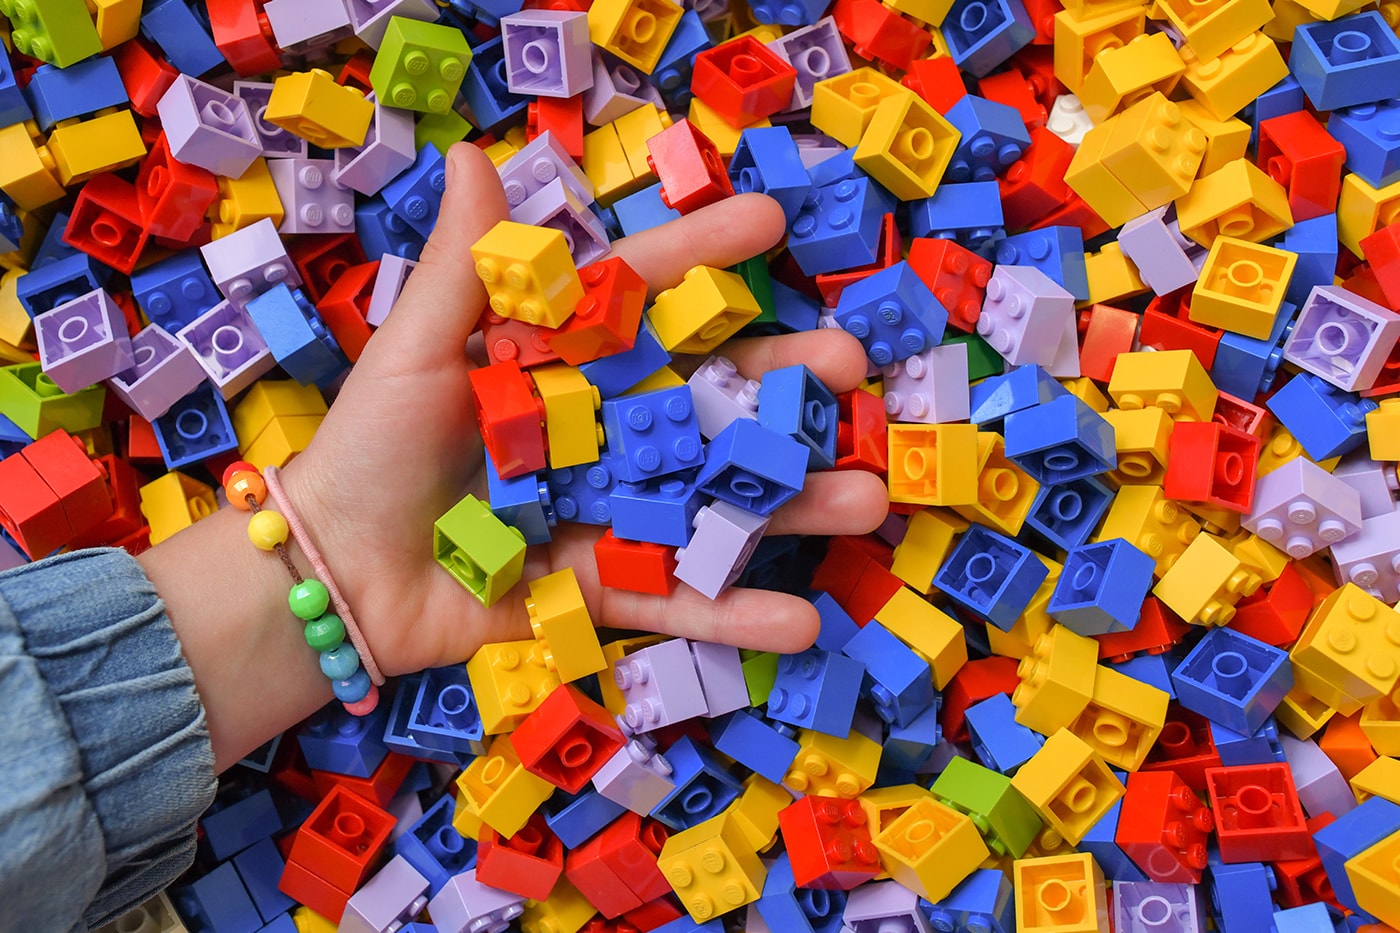 LEGO 宣佈將於 8 月起調漲部分產品價格